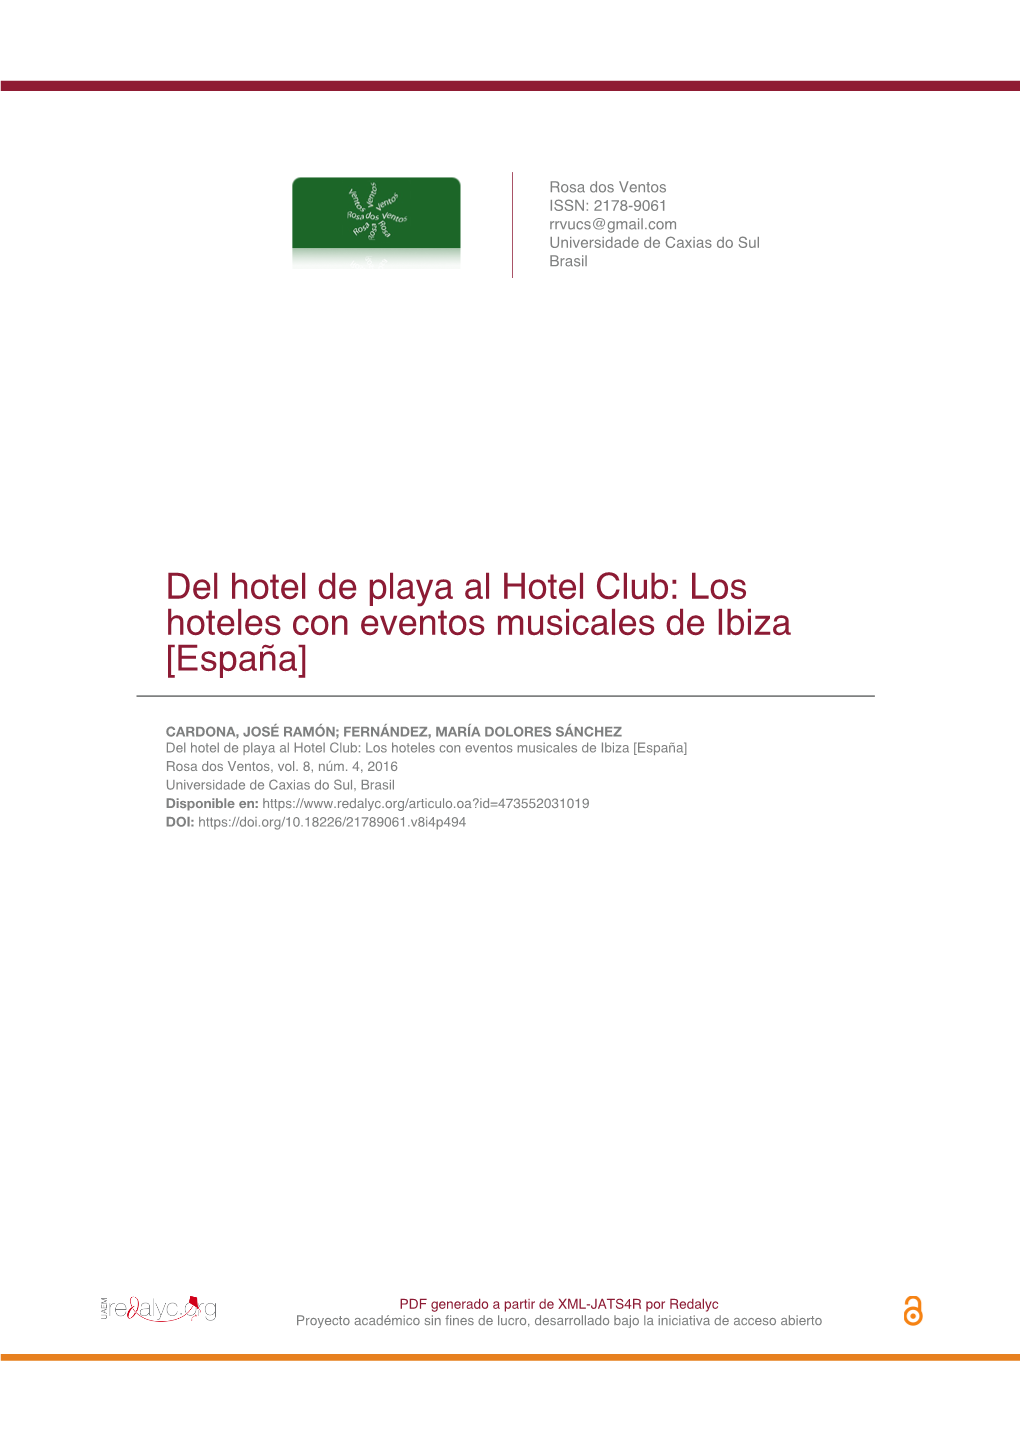 Del Hotel De Playa Al Hotel Club: Los Hoteles Con Eventos Musicales De Ibiza [España]